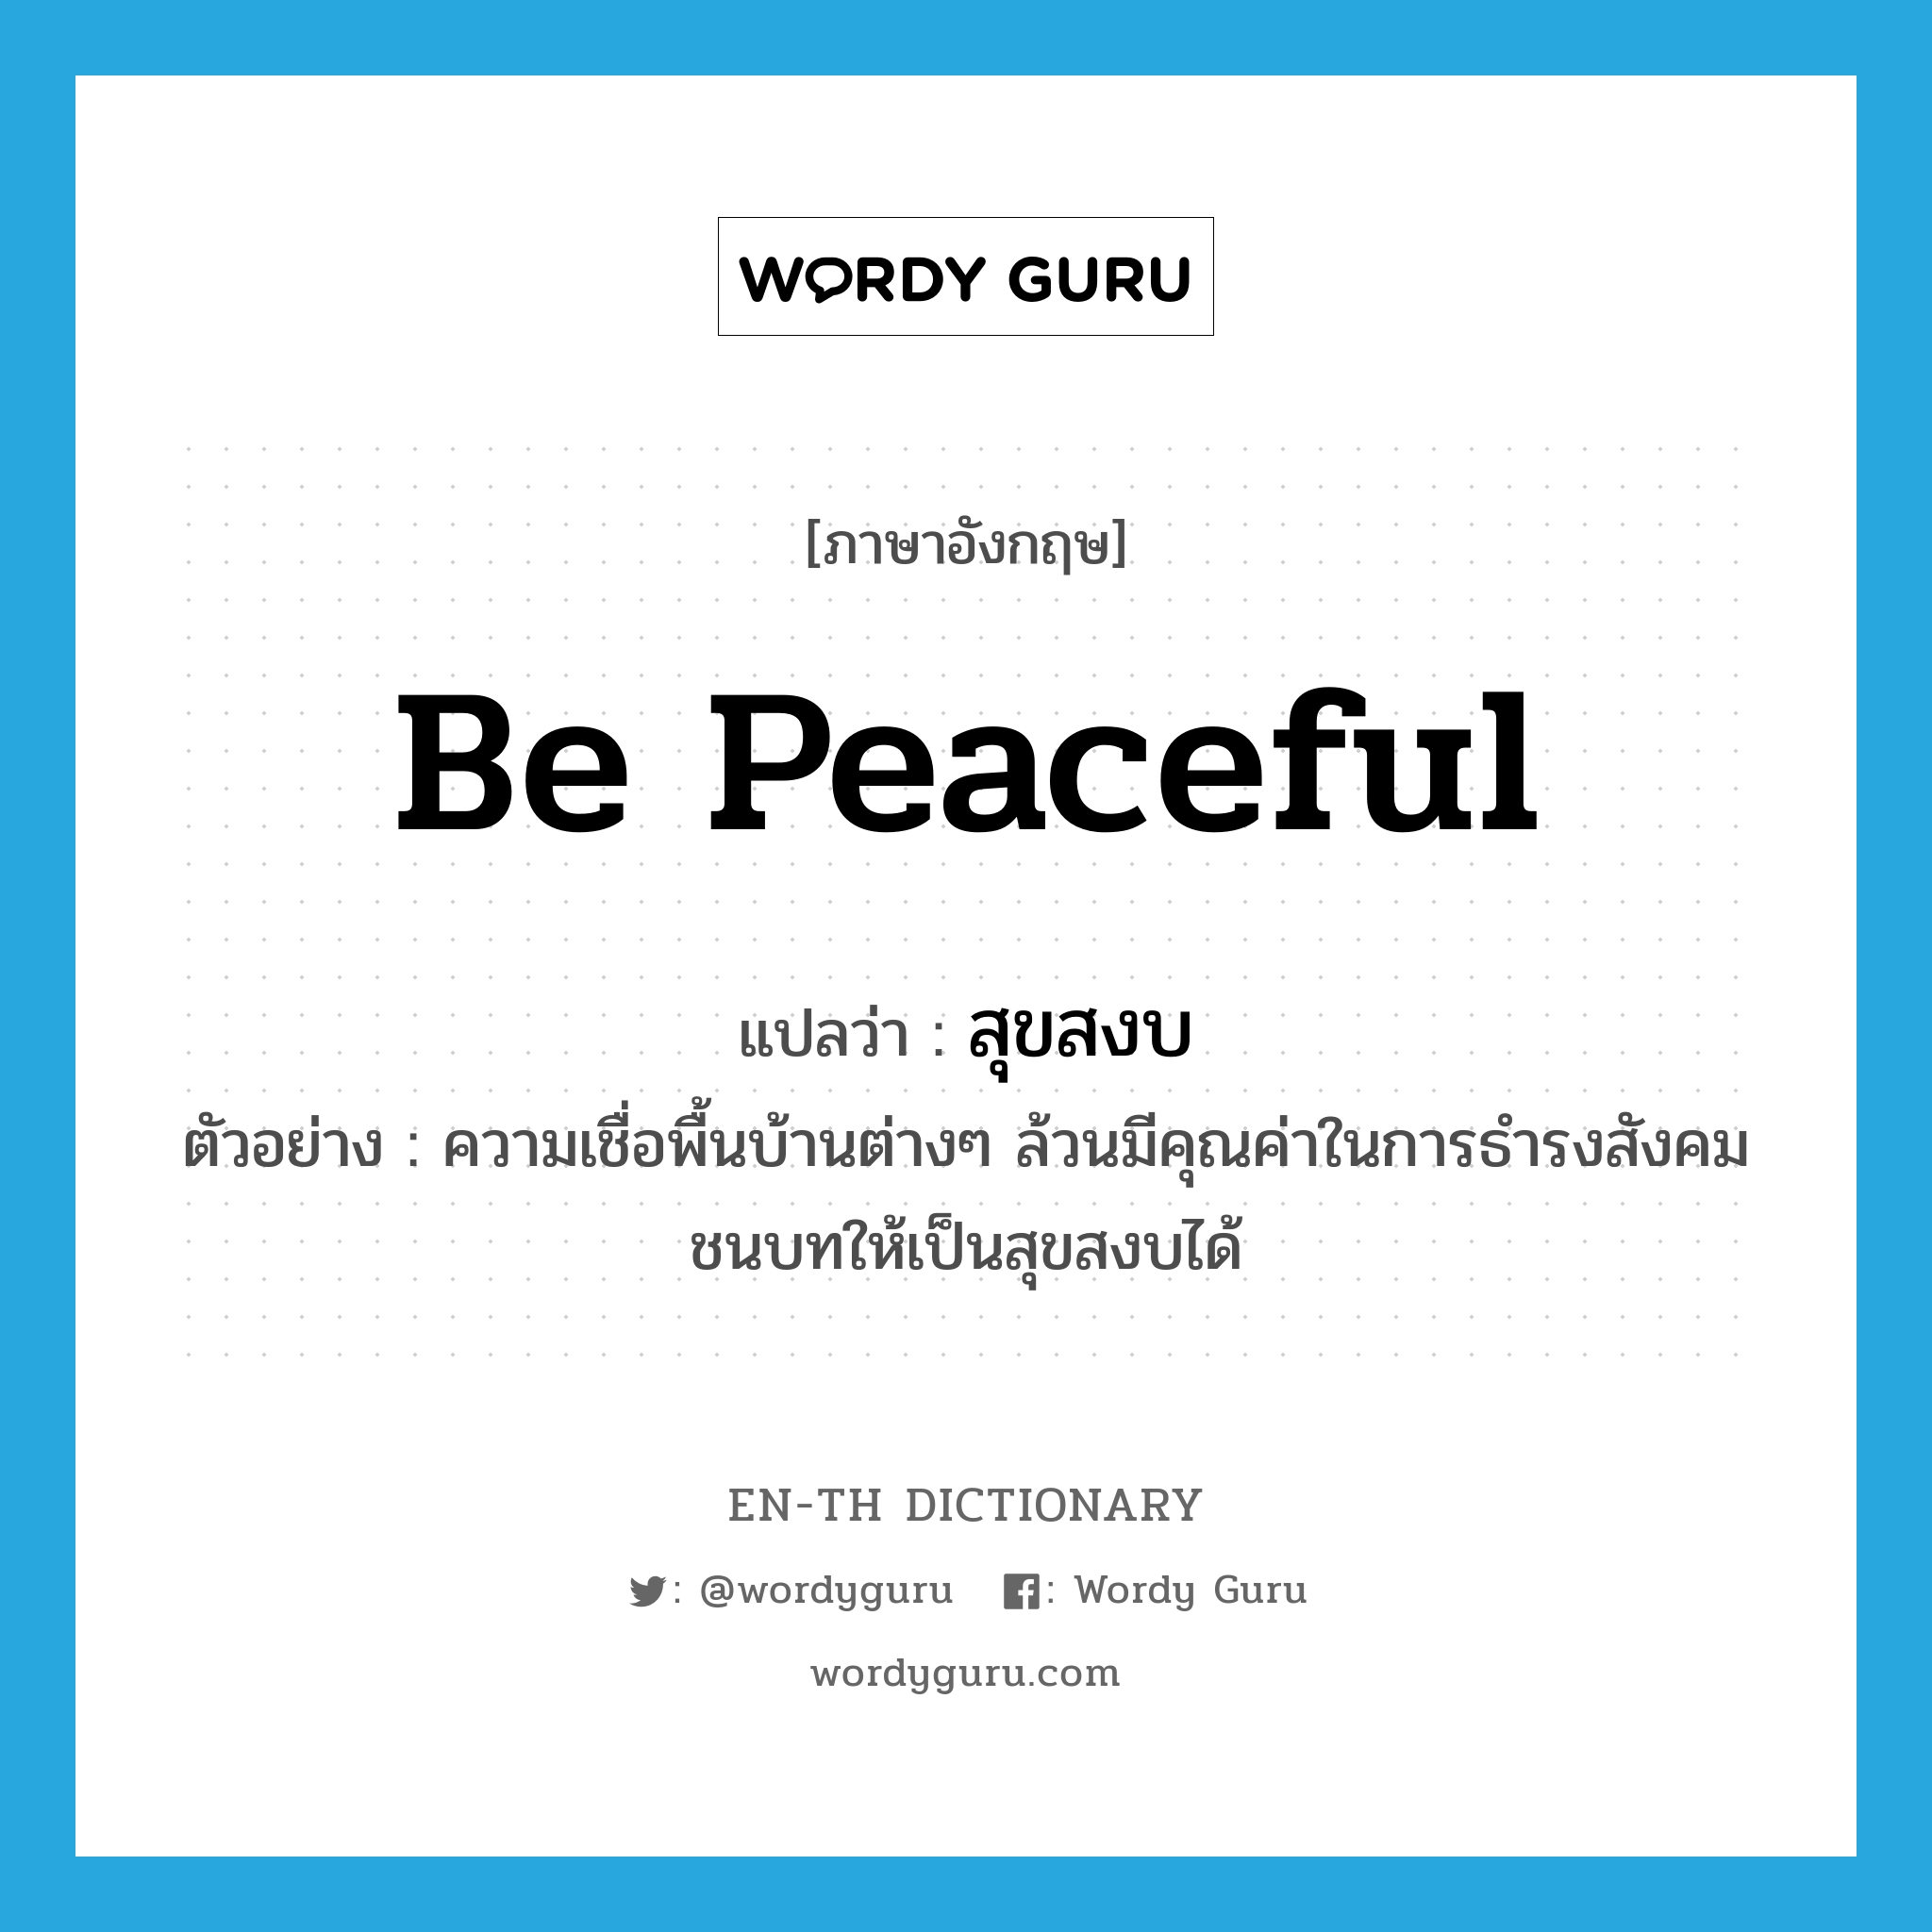 be peaceful แปลว่า?, คำศัพท์ภาษาอังกฤษ be peaceful แปลว่า สุขสงบ ประเภท V ตัวอย่าง ความเชื่อพื้นบ้านต่างๆ ล้วนมีคุณค่าในการธำรงสังคมชนบทให้เป็นสุขสงบได้ หมวด V